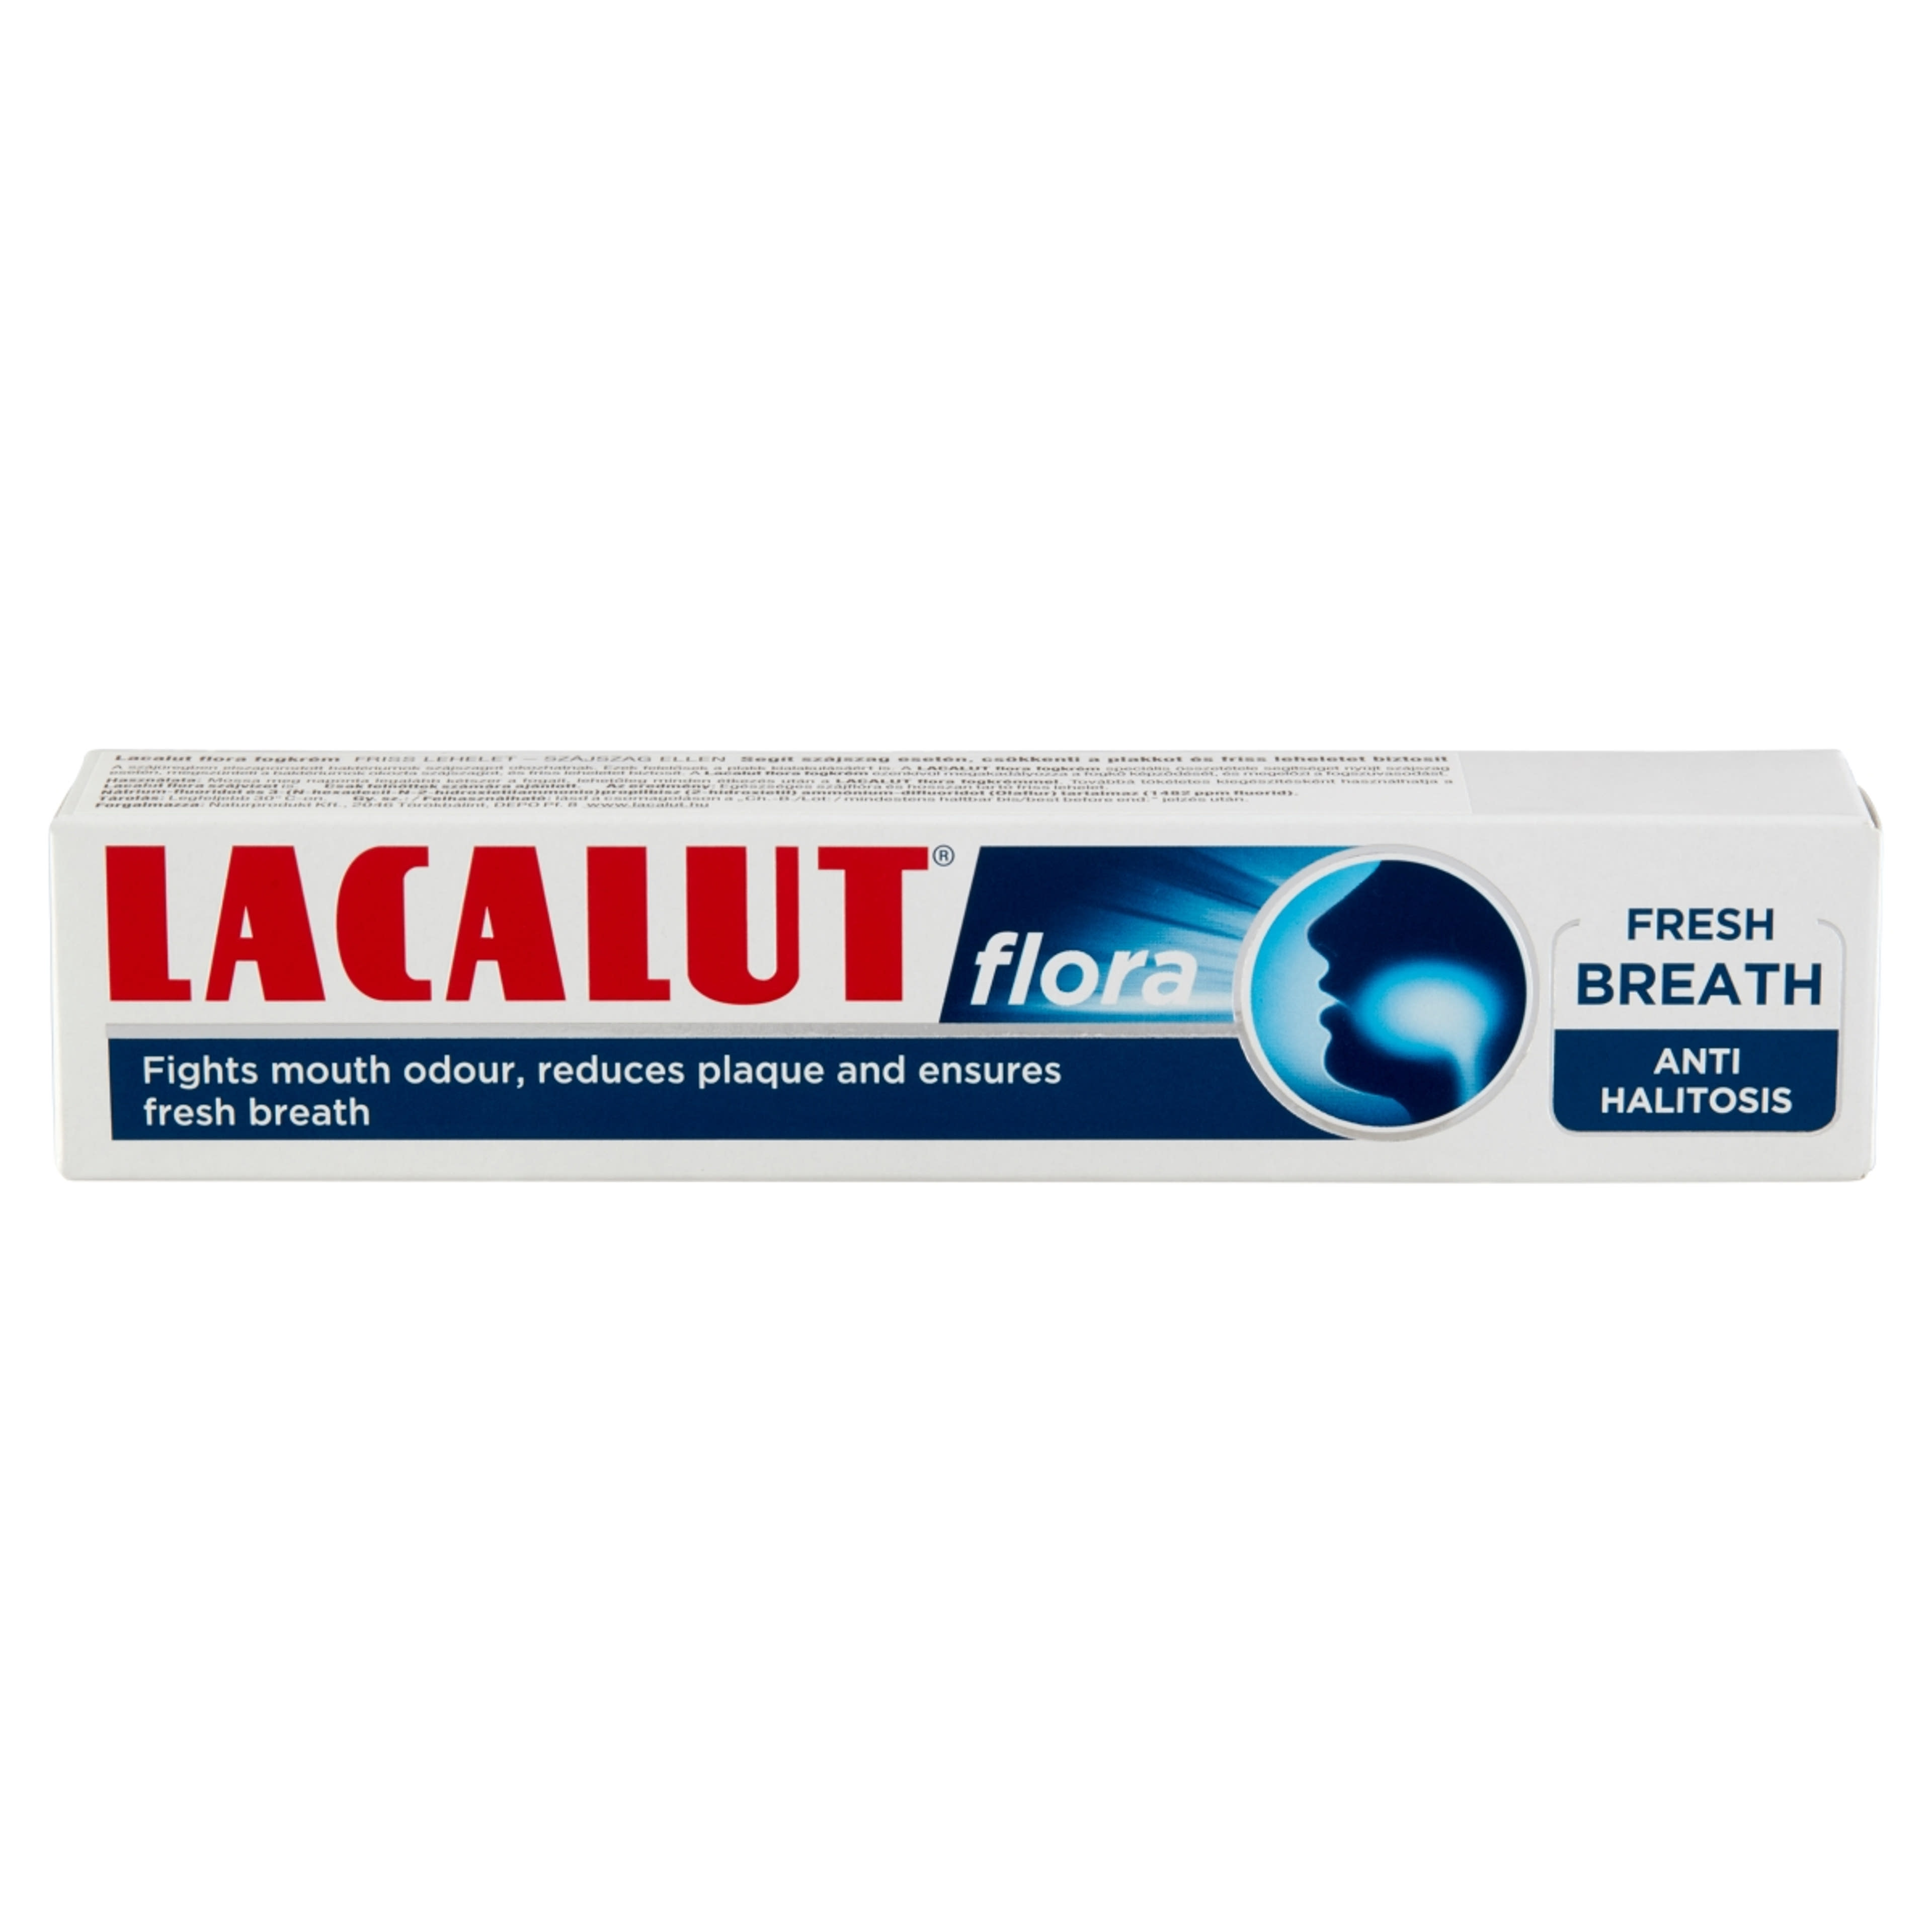 Lacalut Flora fogkrém - 75 ml-2